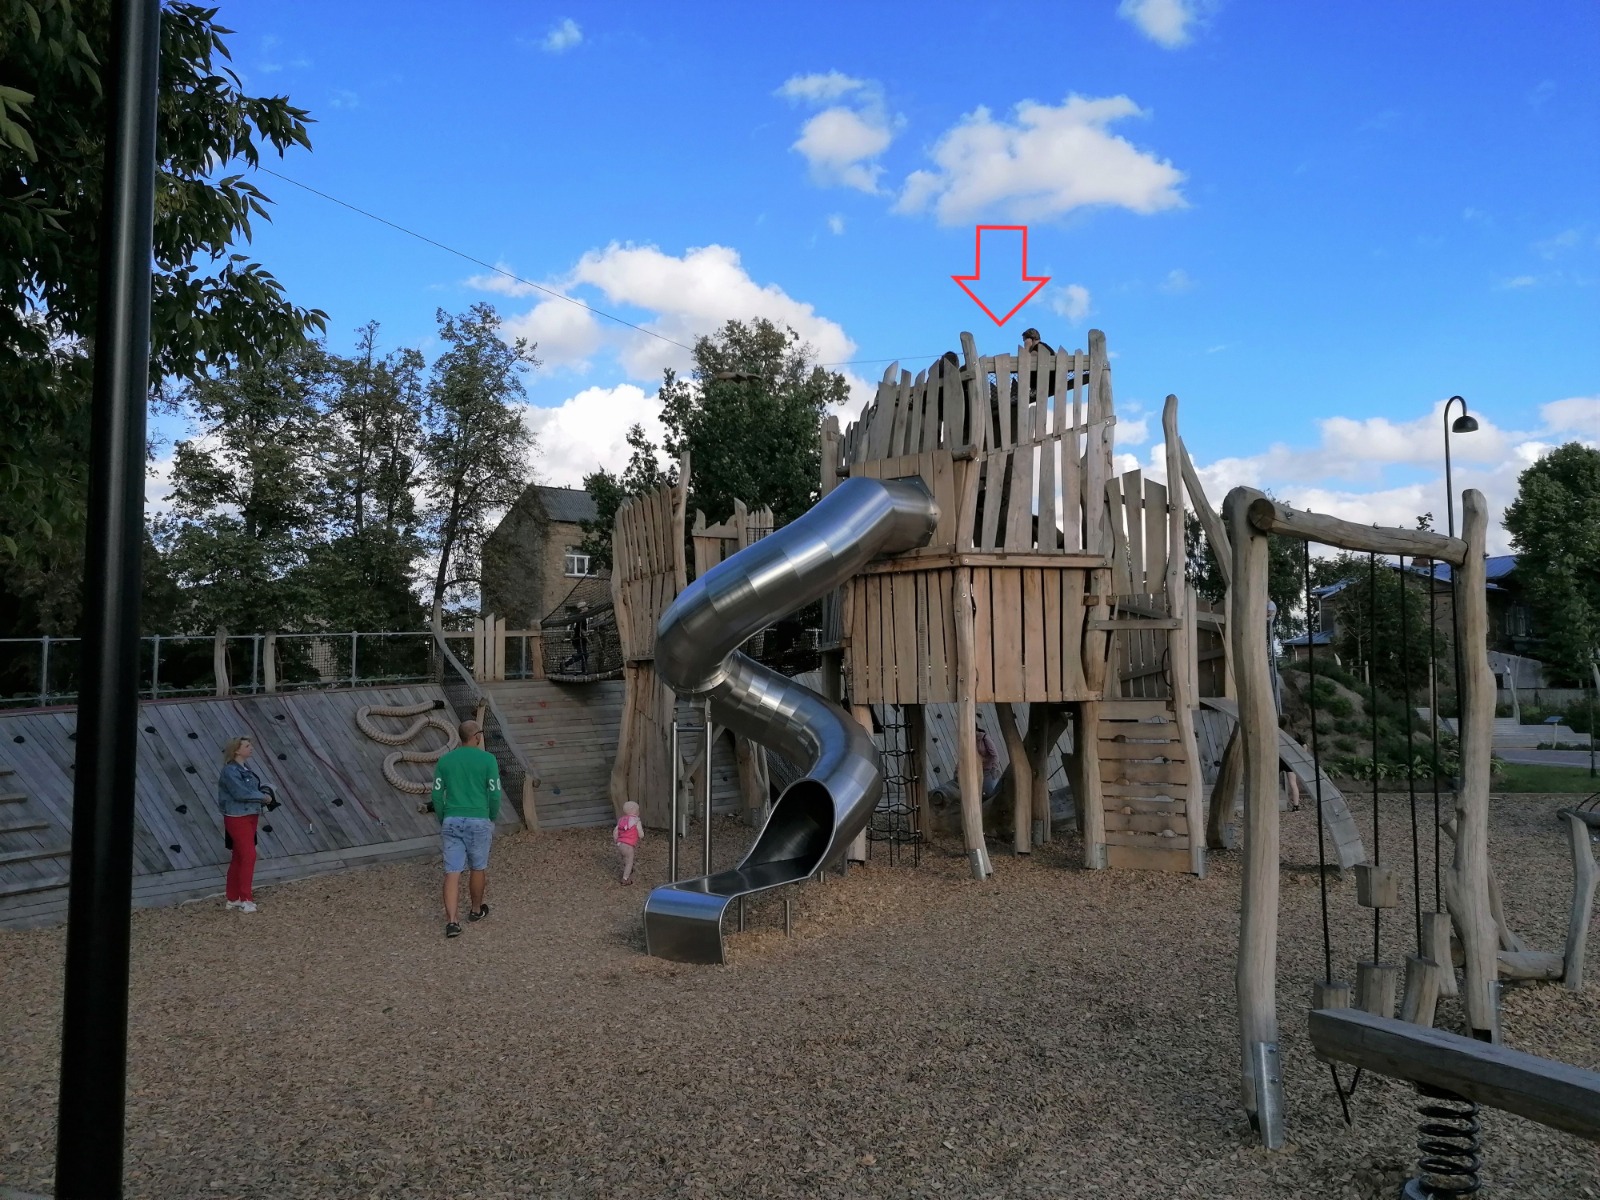 Foto – Iedzīvotāja iesūtīts ziņojums. Bērni atrodas rotaļu iekārtā neatļautā un bīstamā vietā, Uzvaras parkā